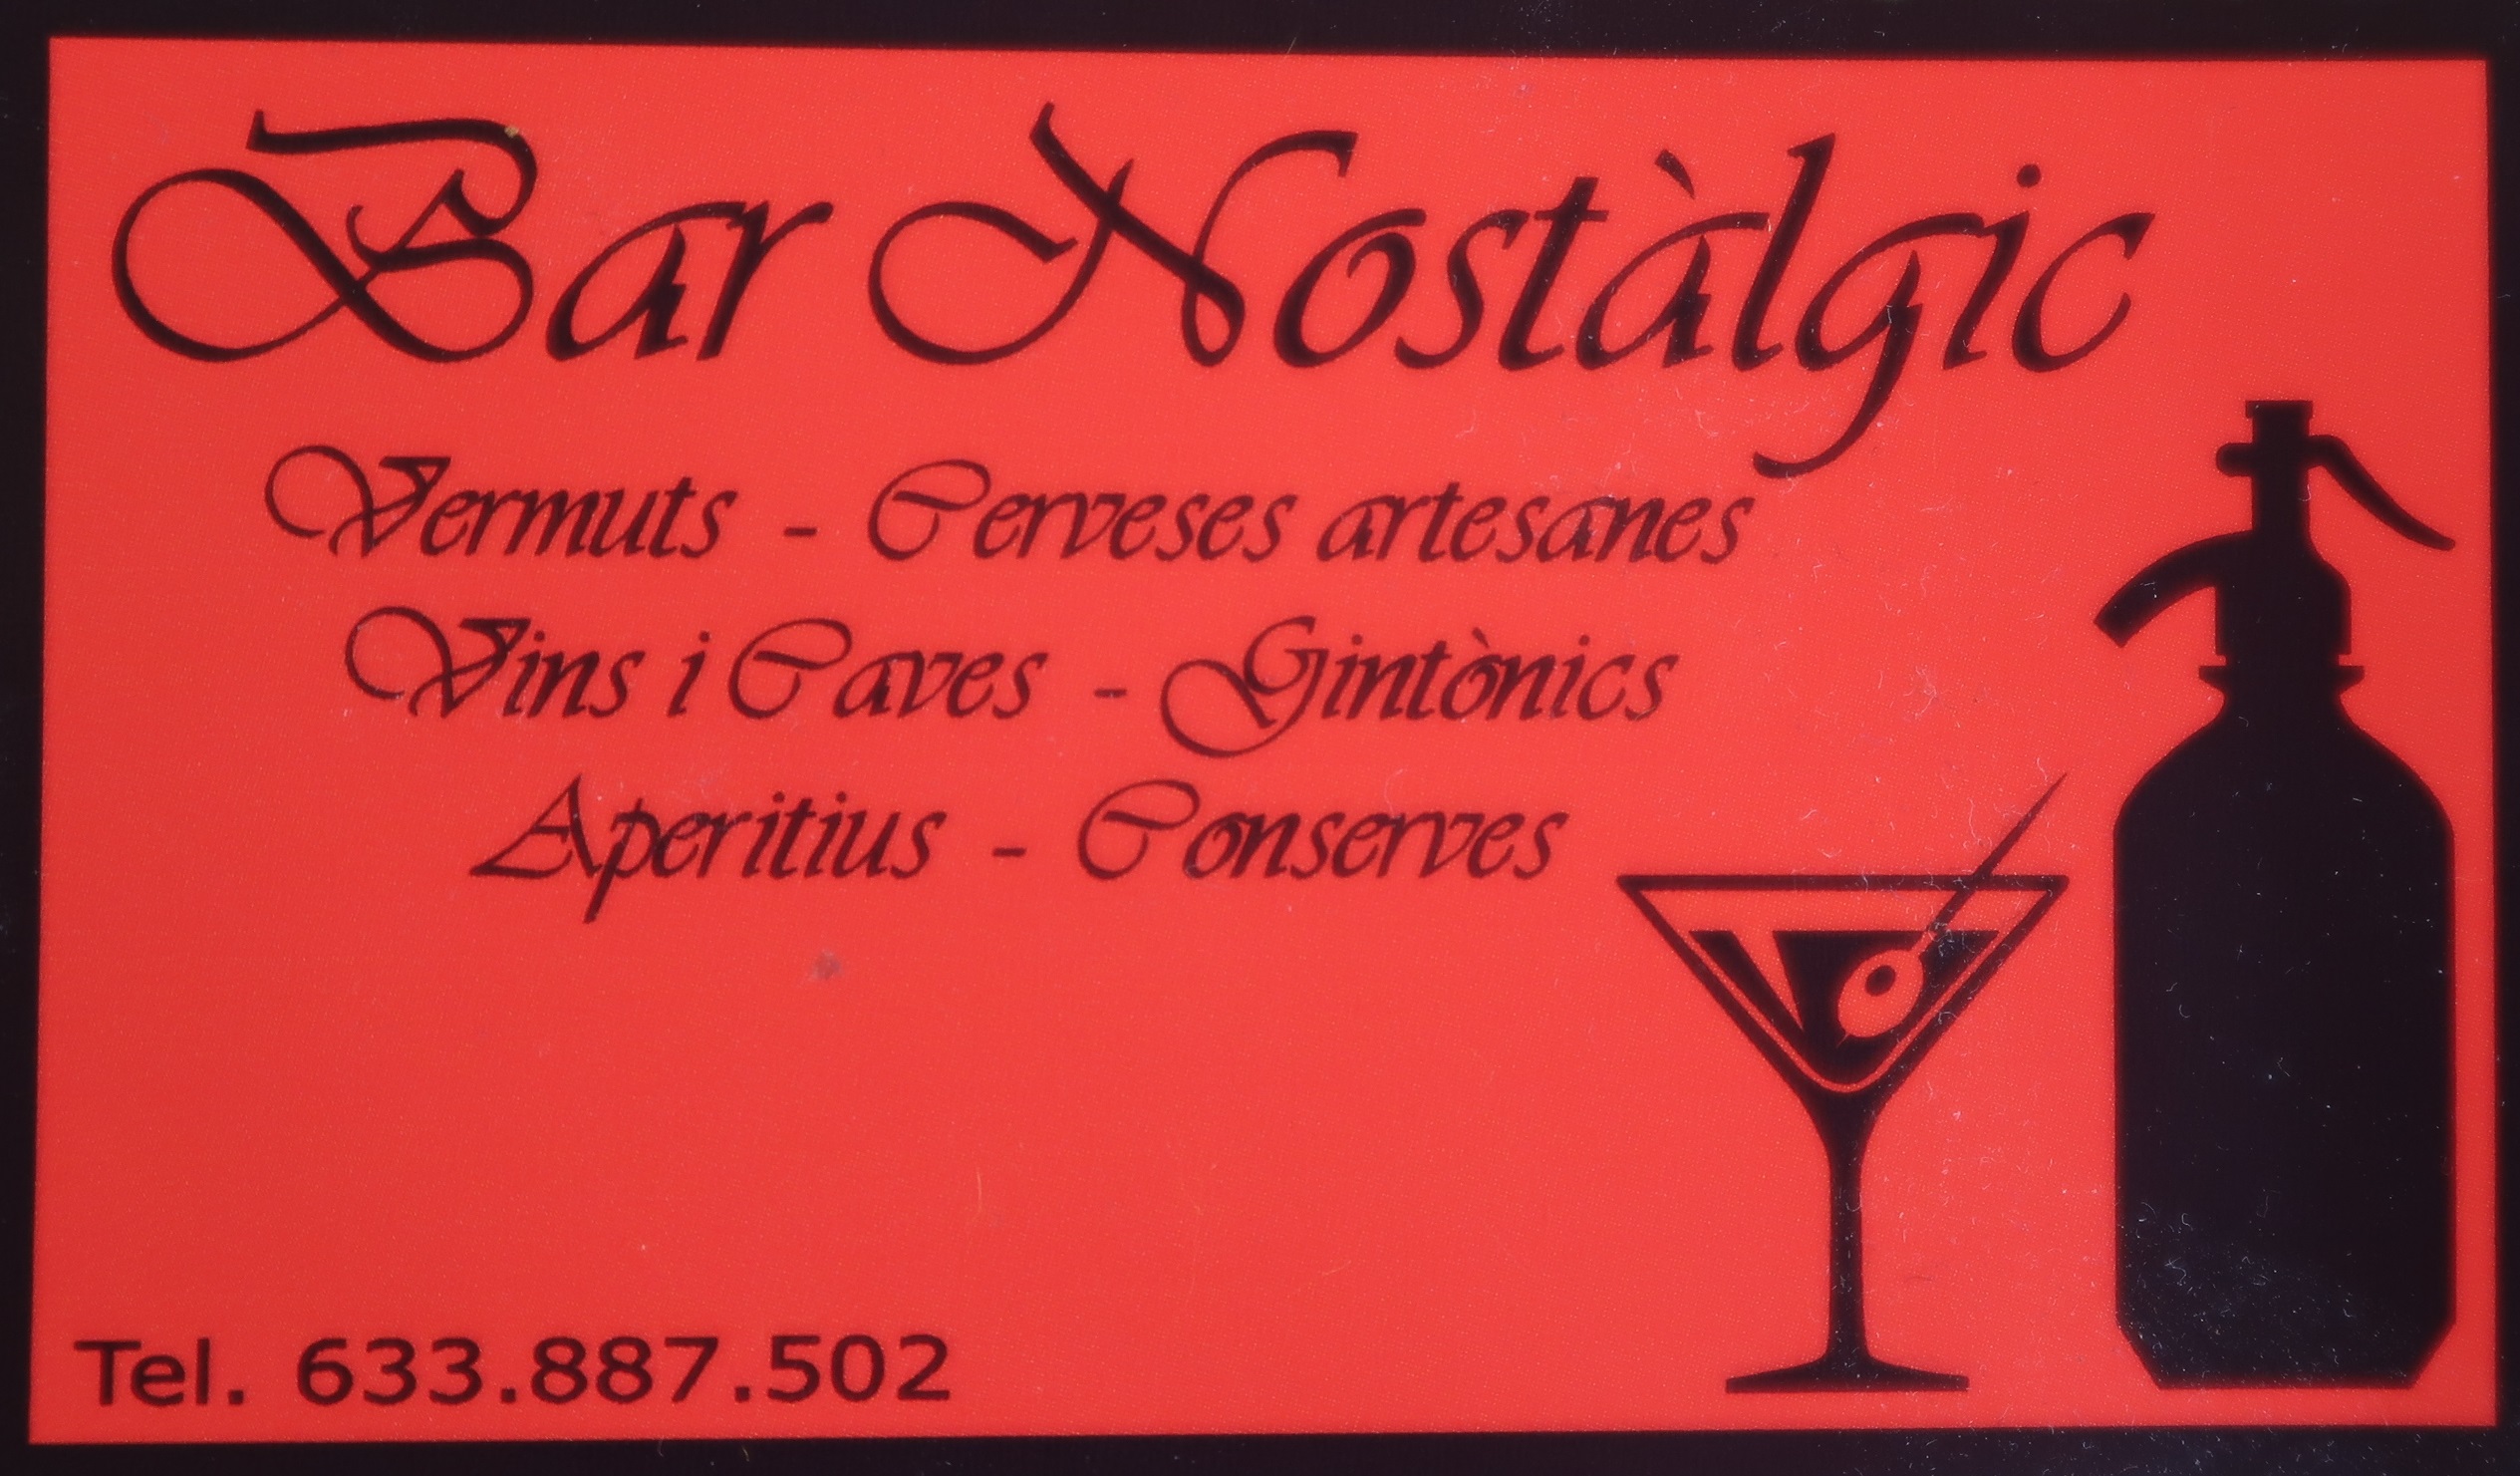 Bar Nostalgic business card